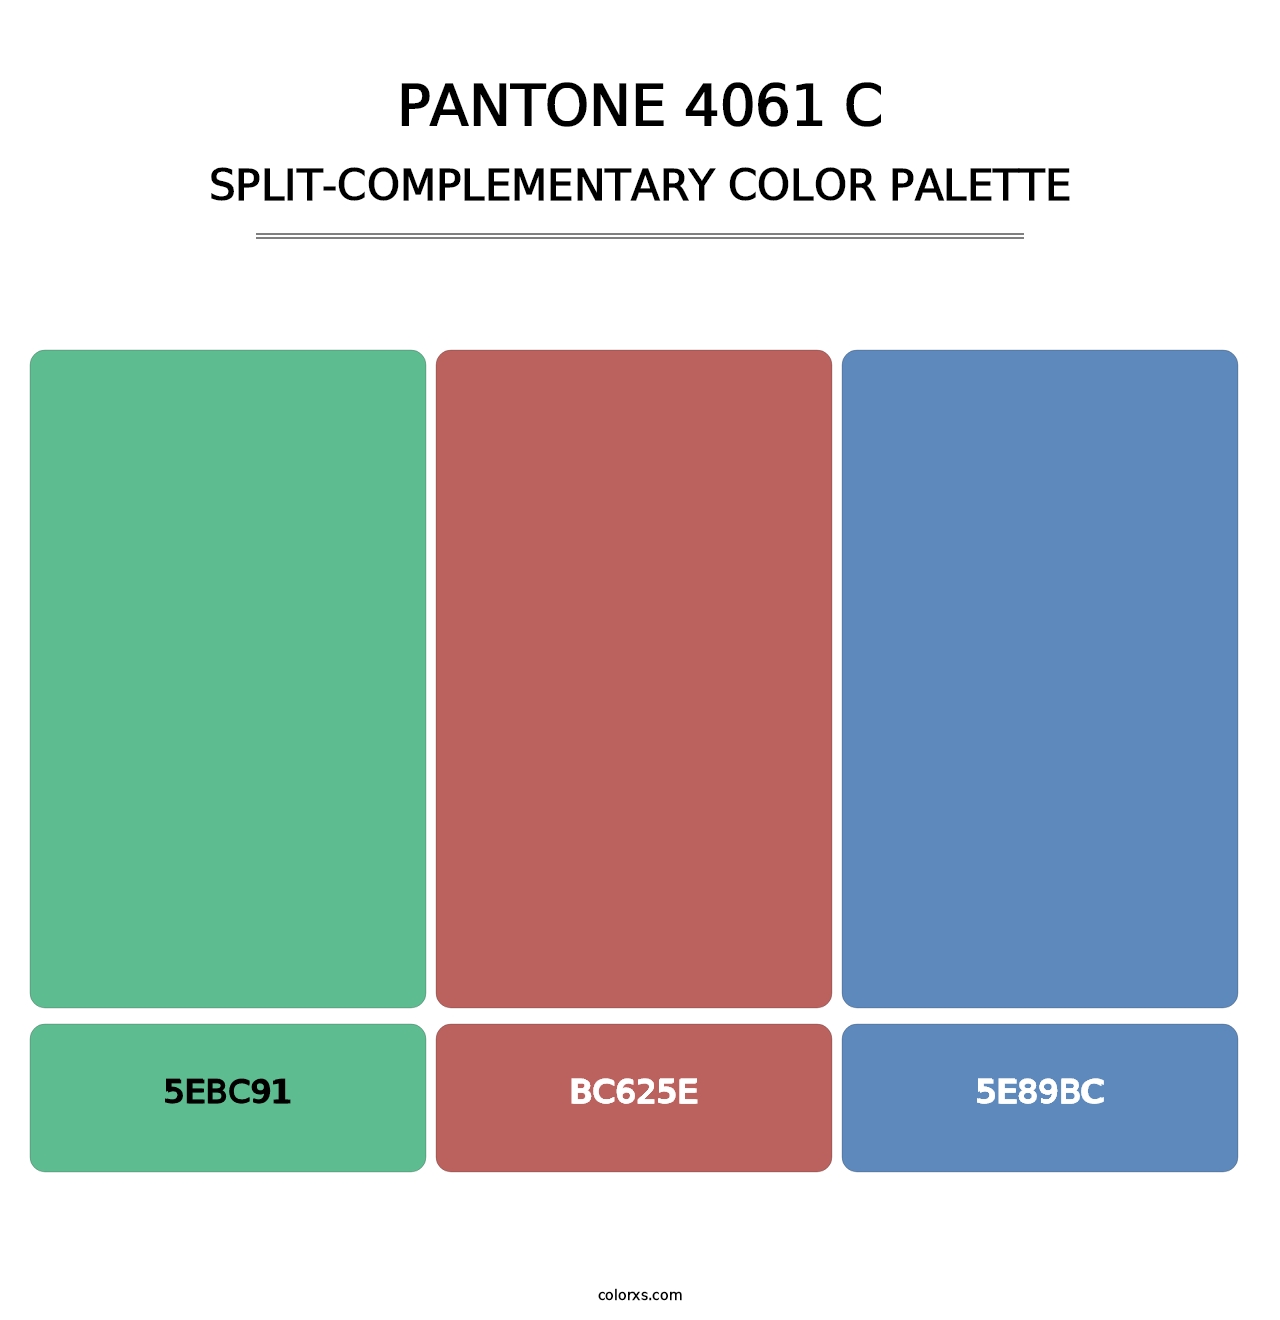 PANTONE 4061 C - Split-Complementary Color Palette